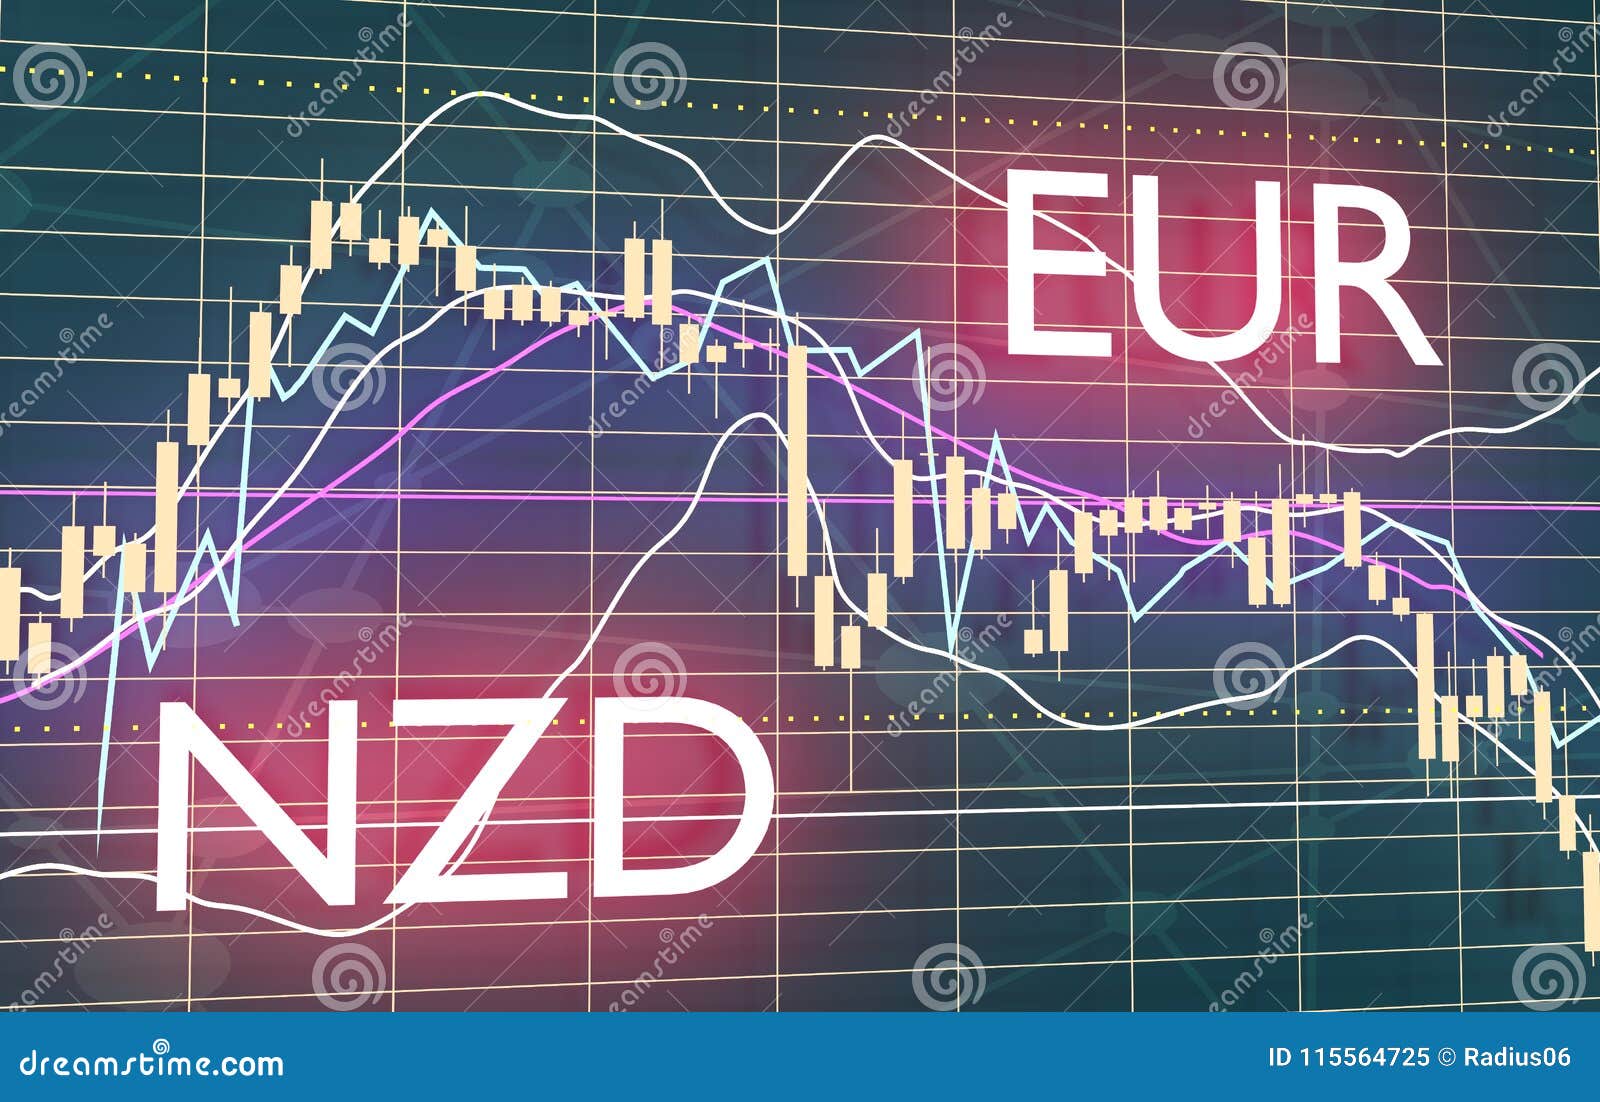 Nz Stock Exchange Chart